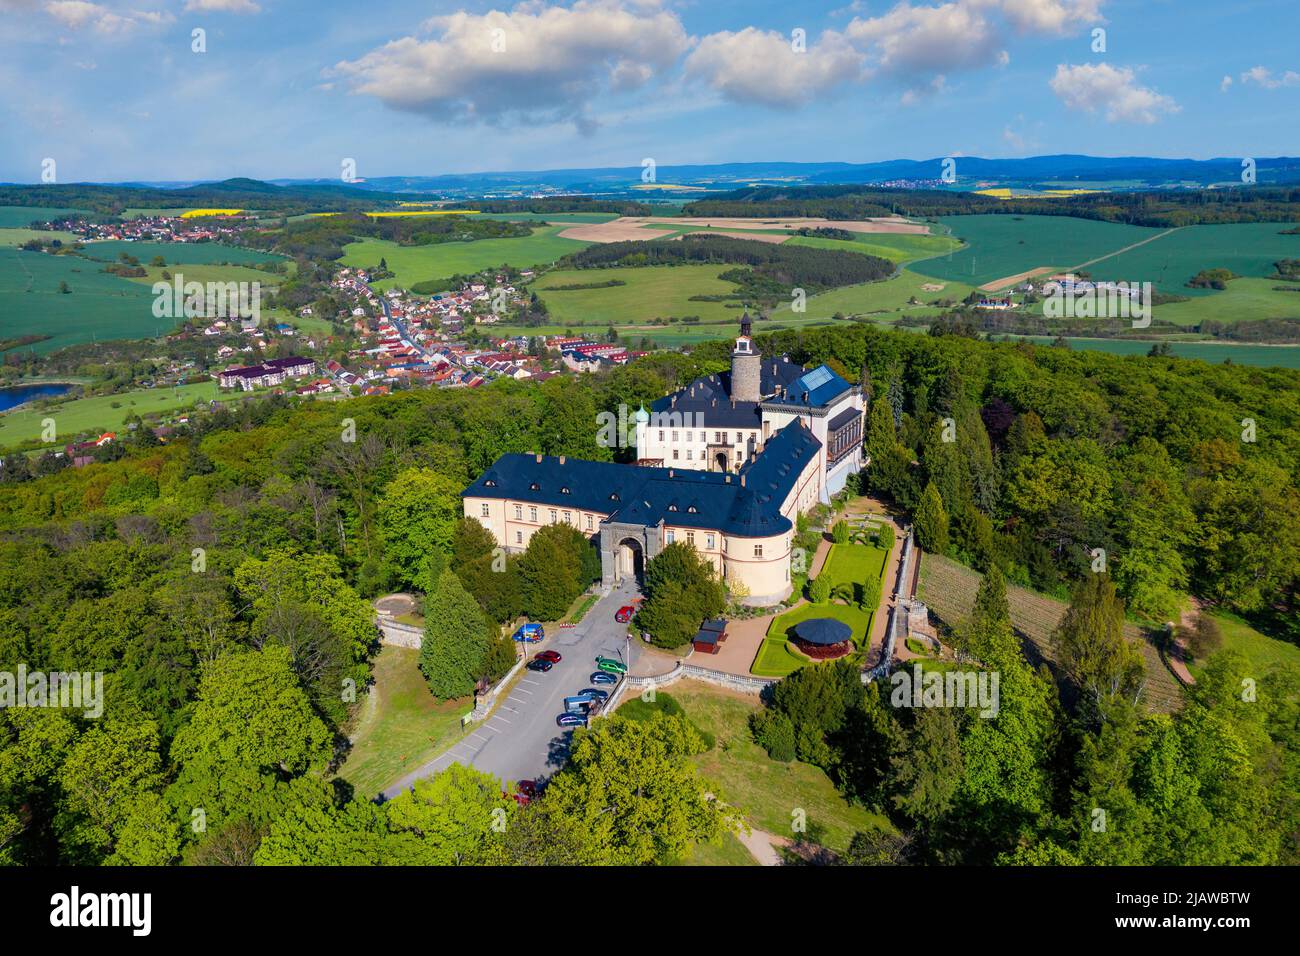 Vista superior del castillo medieval Zbiroh. República Checa. Pintoresco paisaje con imponente castillo medieval de Zbiroh en el distrito de Rokycany, región de Pilsen, CZ Foto de stock